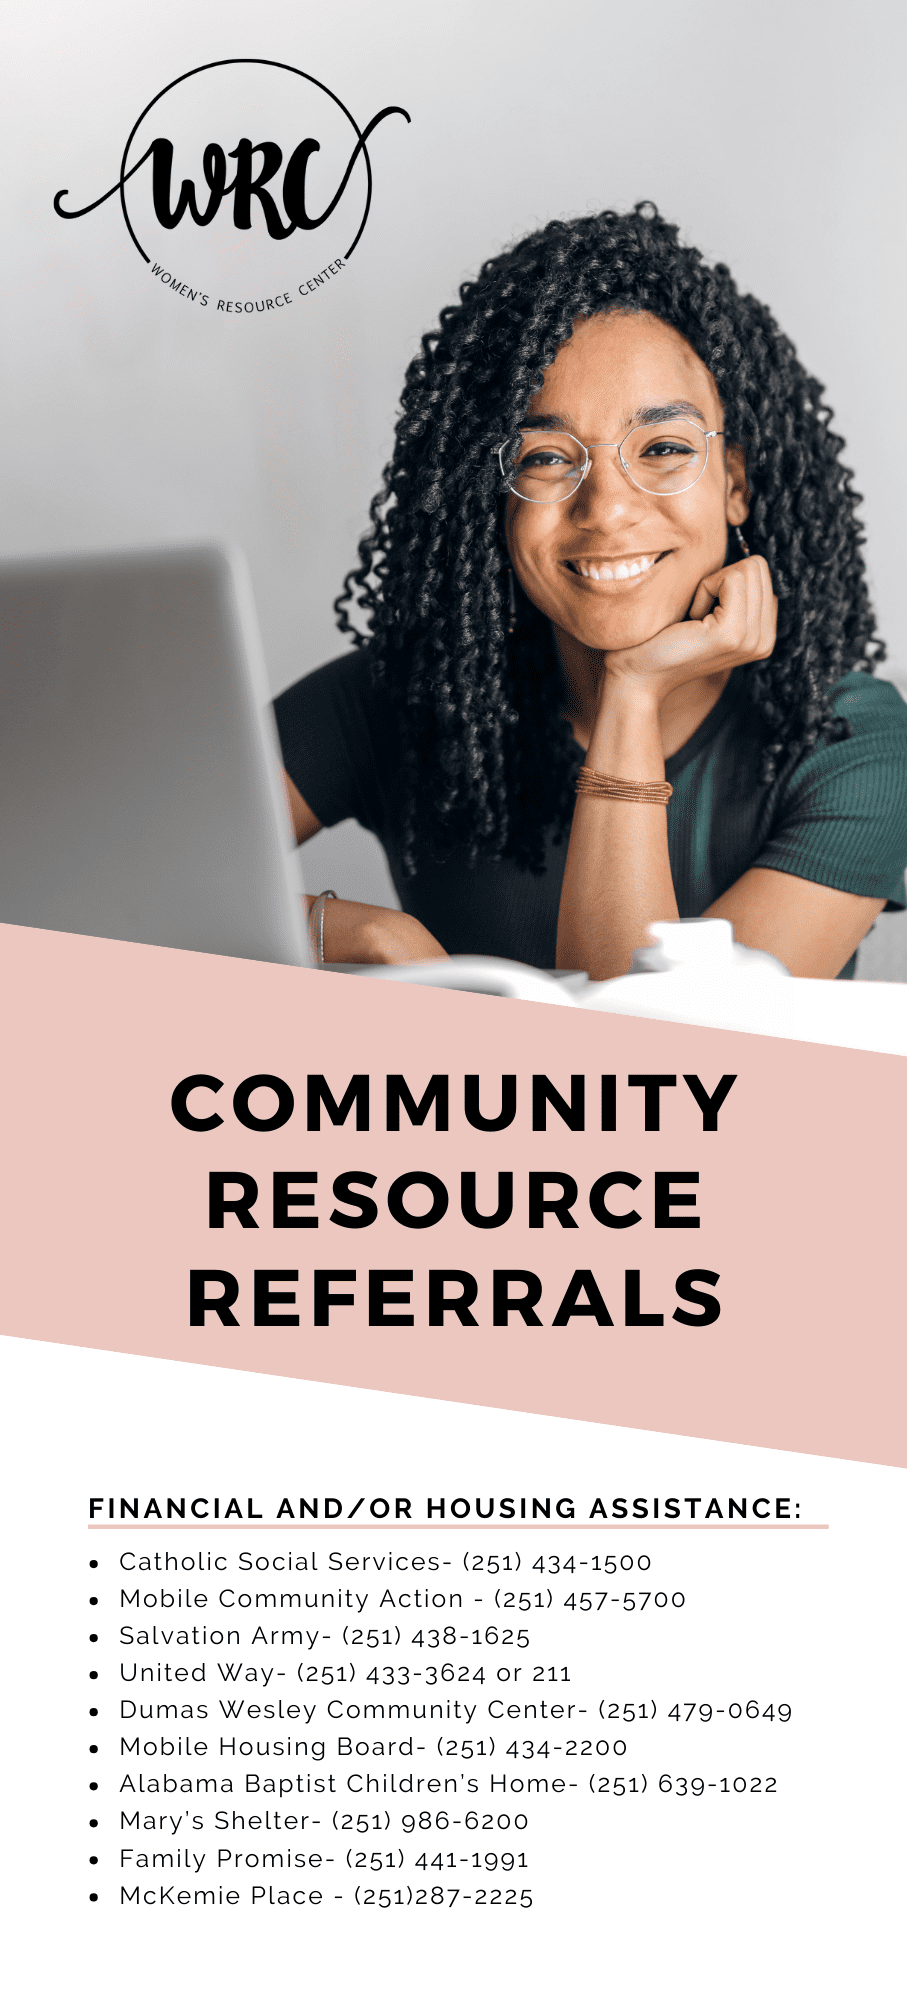 Community Resource Referrals Graphic